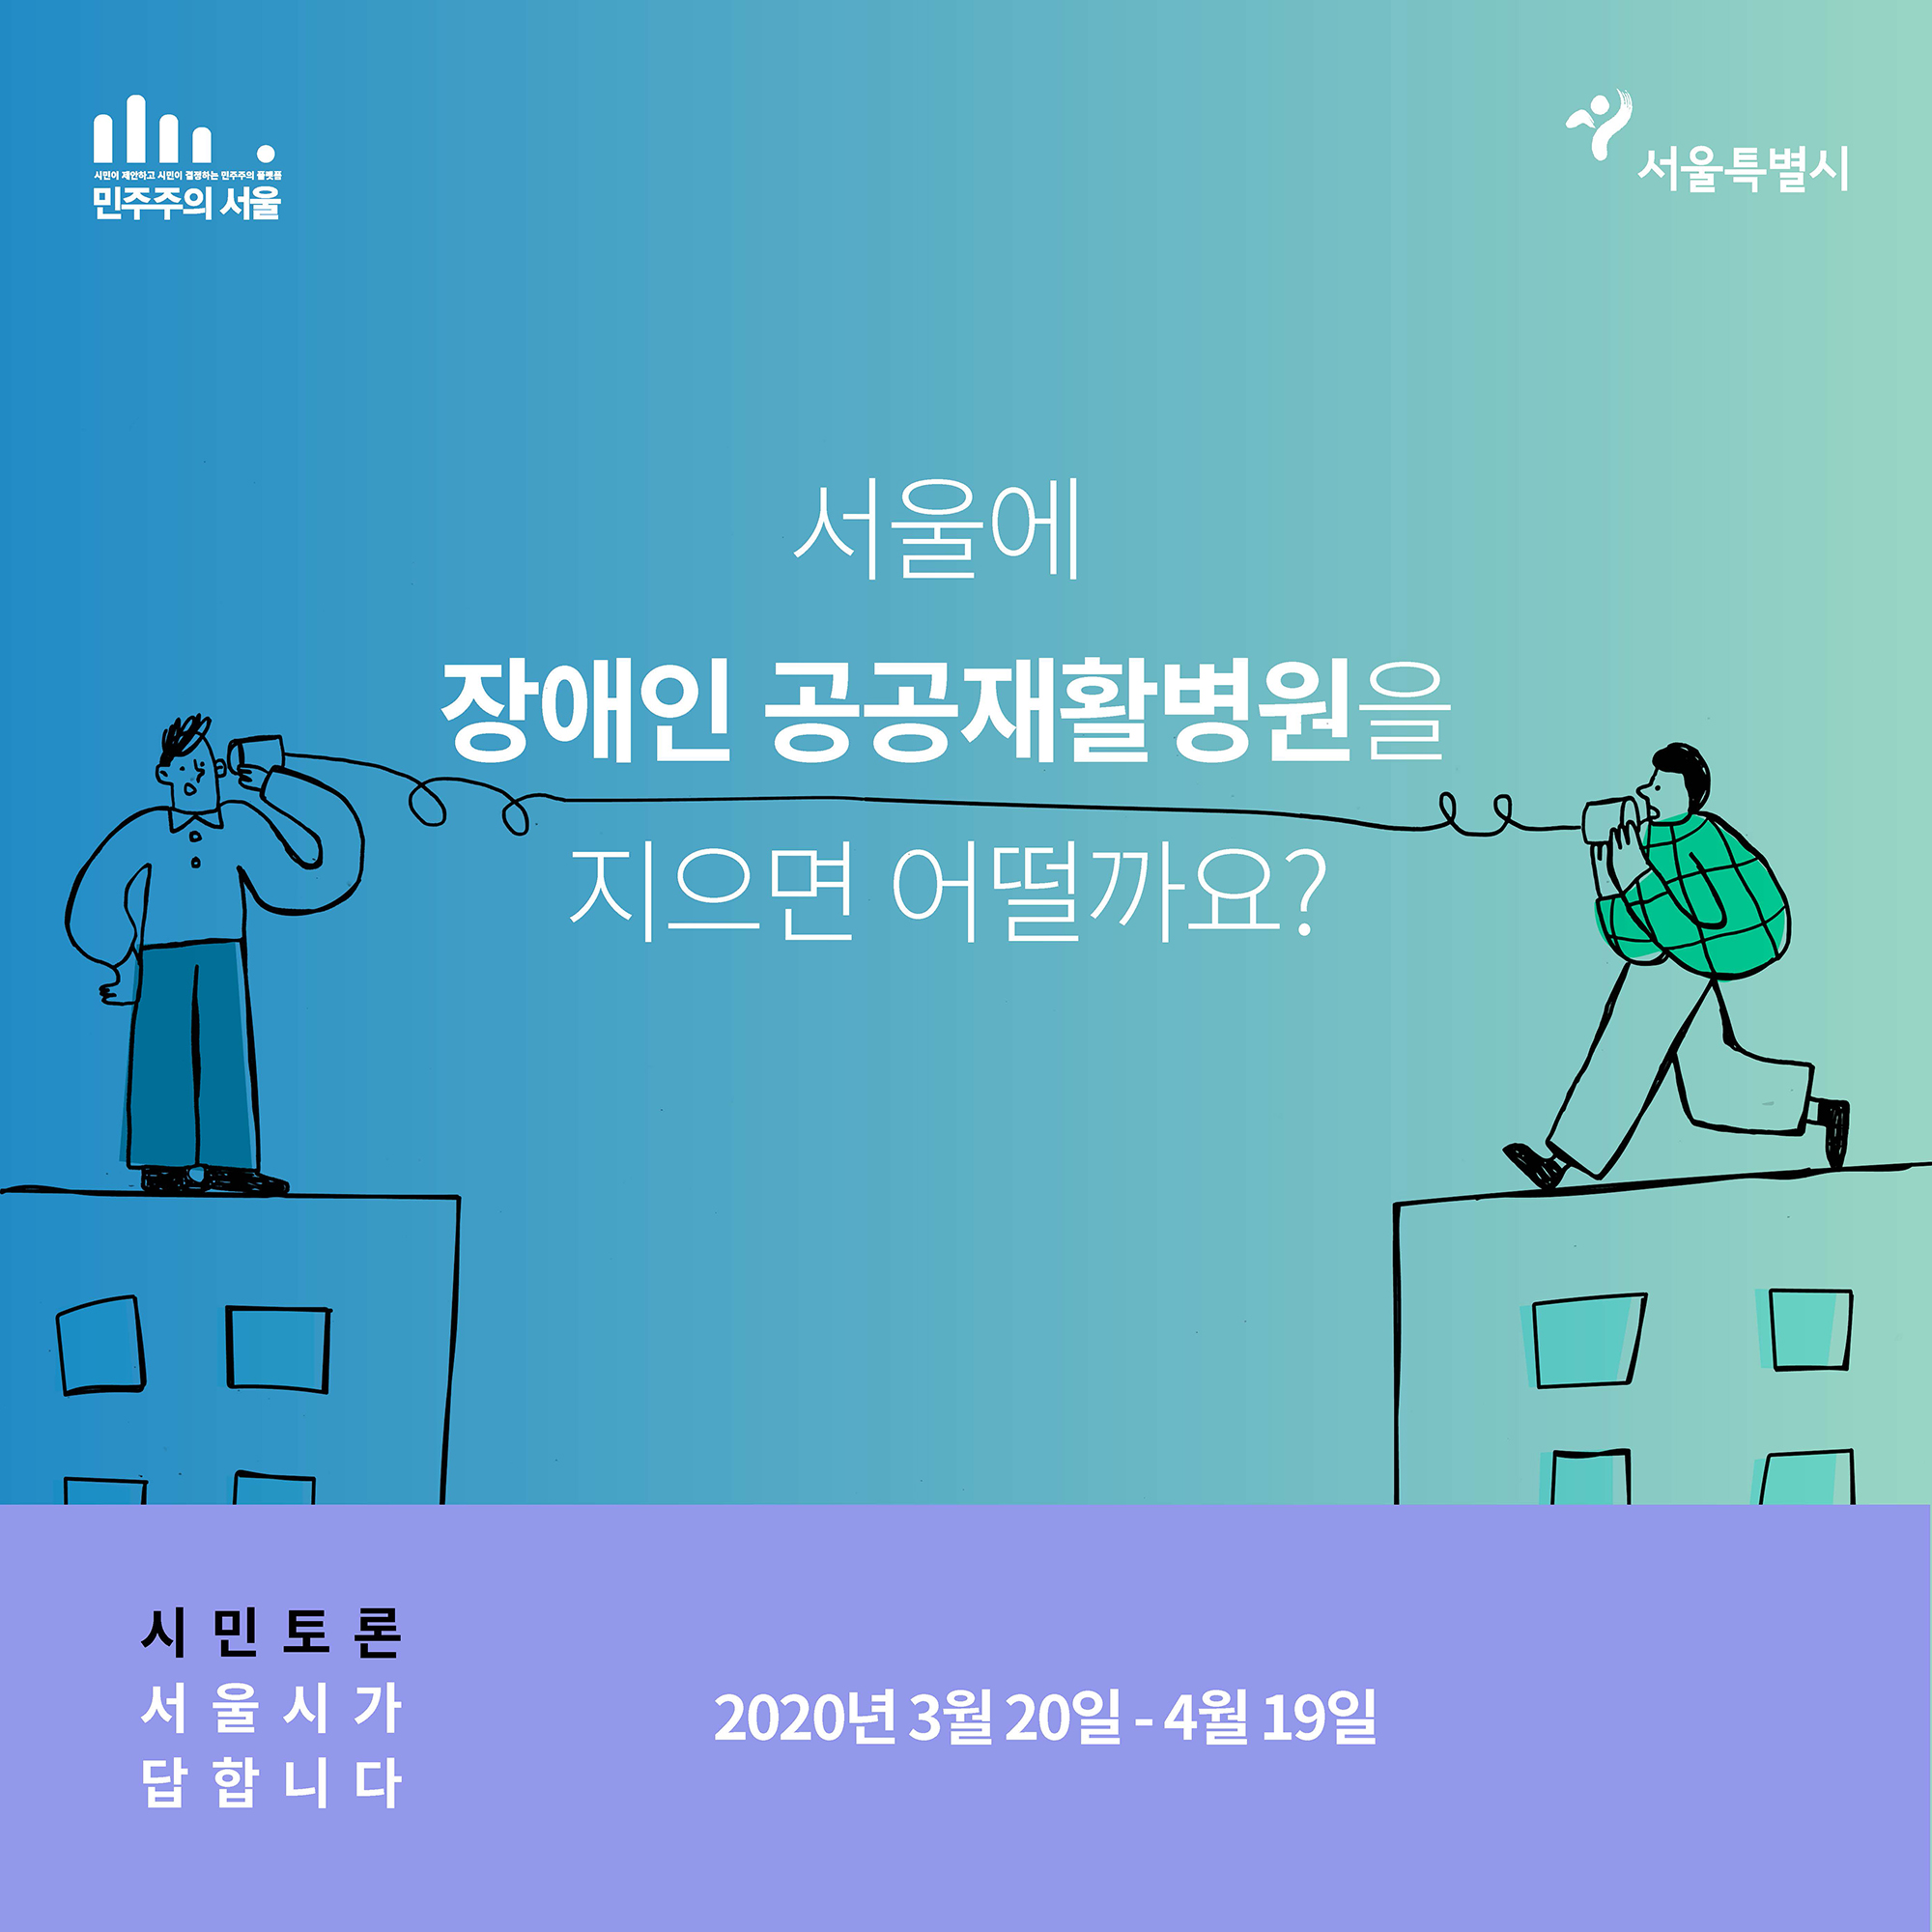 서울에 장애인 공공재활병원을 지으면 어떨가요? 2020년 3월20일~4월19일